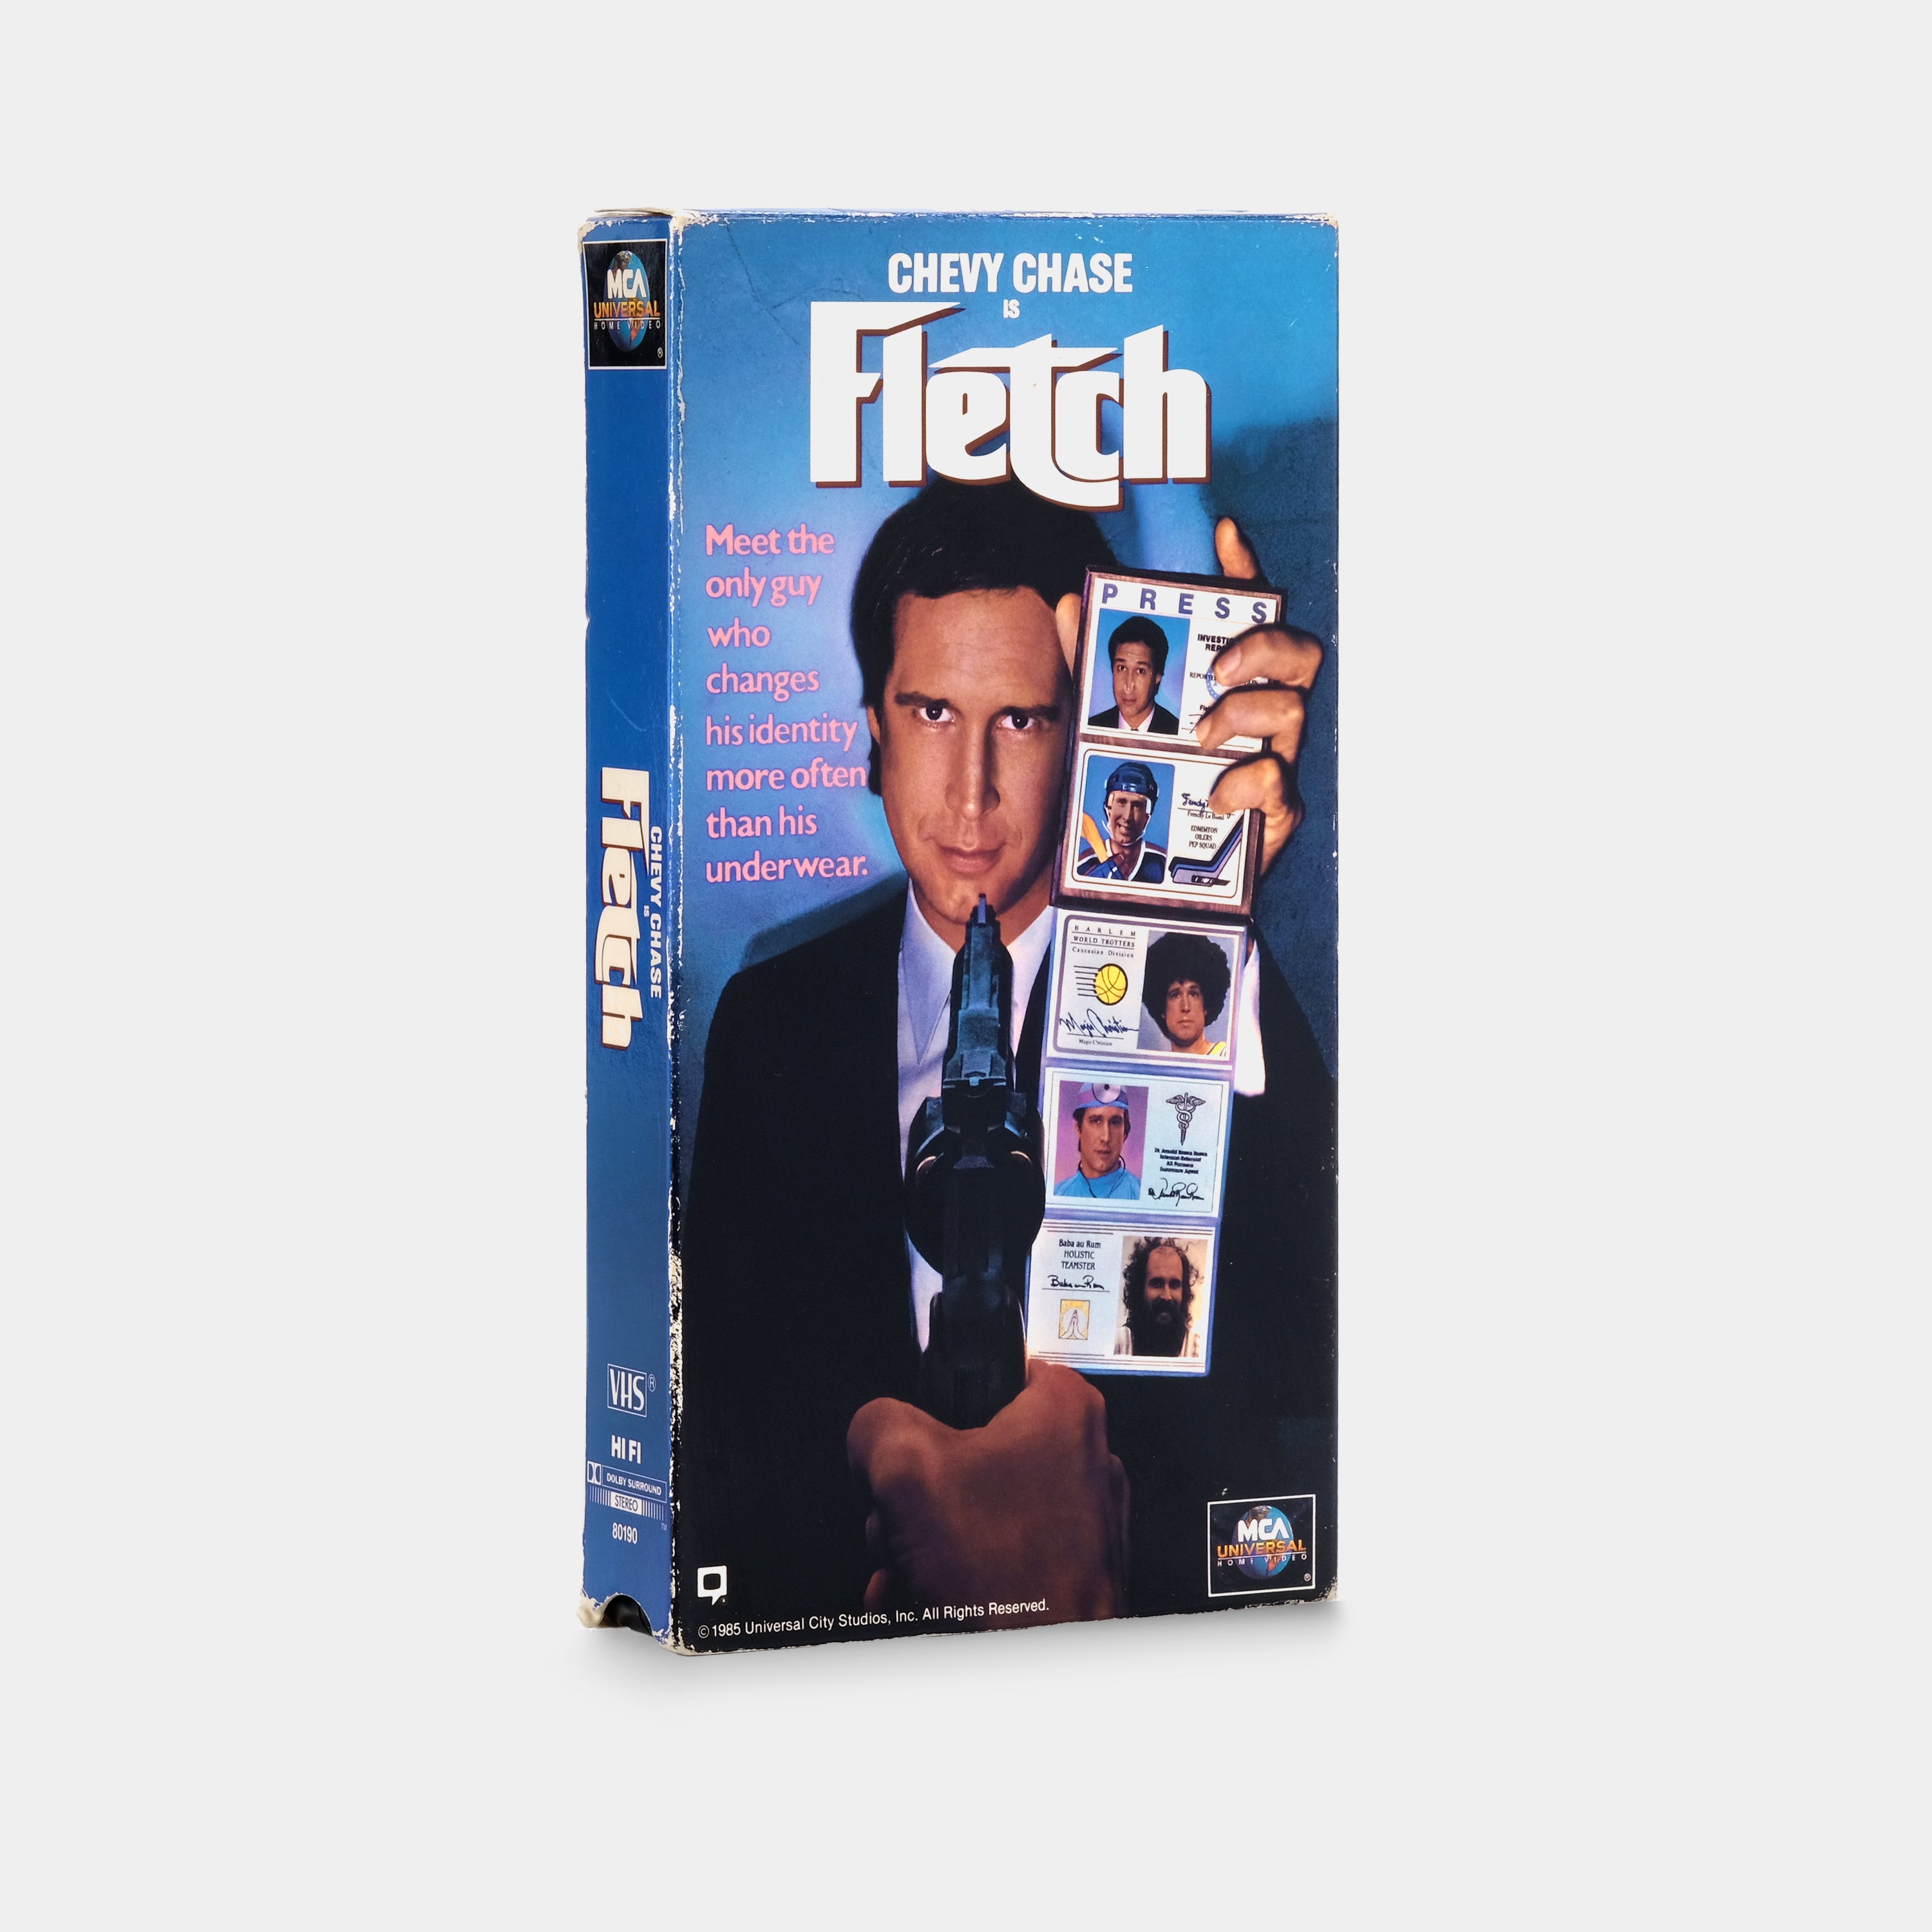 Fletch VHS Tape